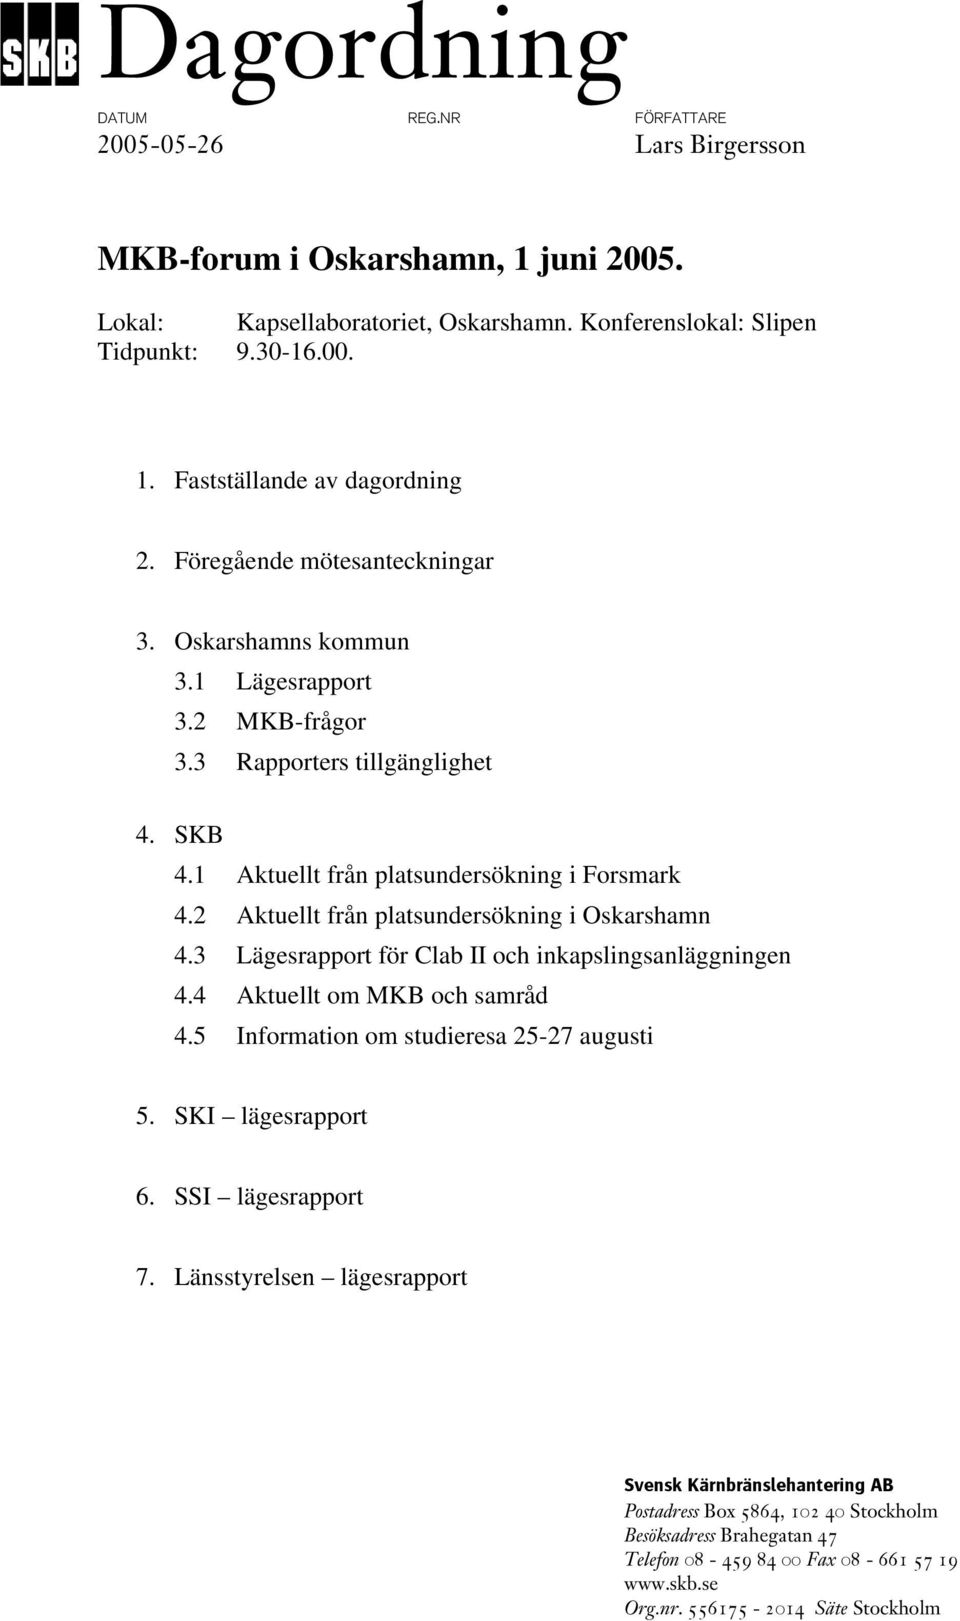 2 Aktuellt från platsundersökning i Oskarshamn 4.3 Lägesrapport för Clab II och inkapslingsanläggningen 4.4 Aktuellt om MKB och samråd 4.5 Information om studieresa 25-27 augusti 5.